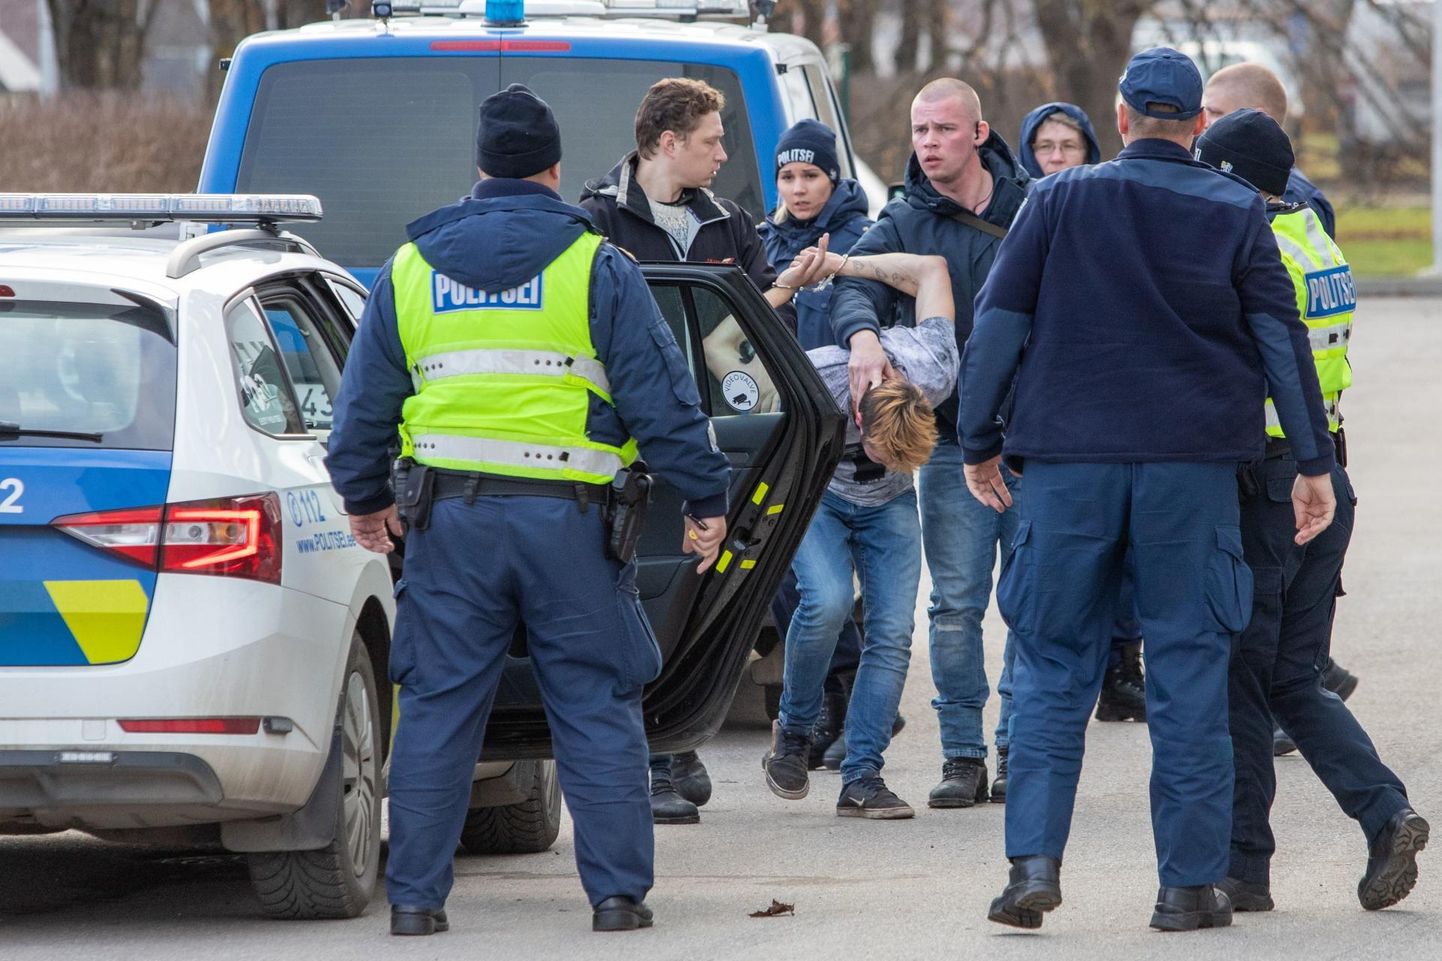 Eelmise aasta 16. novembril toimus Viljandimaal taksorööv. Politsei tabas tagaotsitavad vargad sama päeva ennelõunal Paalalinnas Suur-Kaare 33 majast.